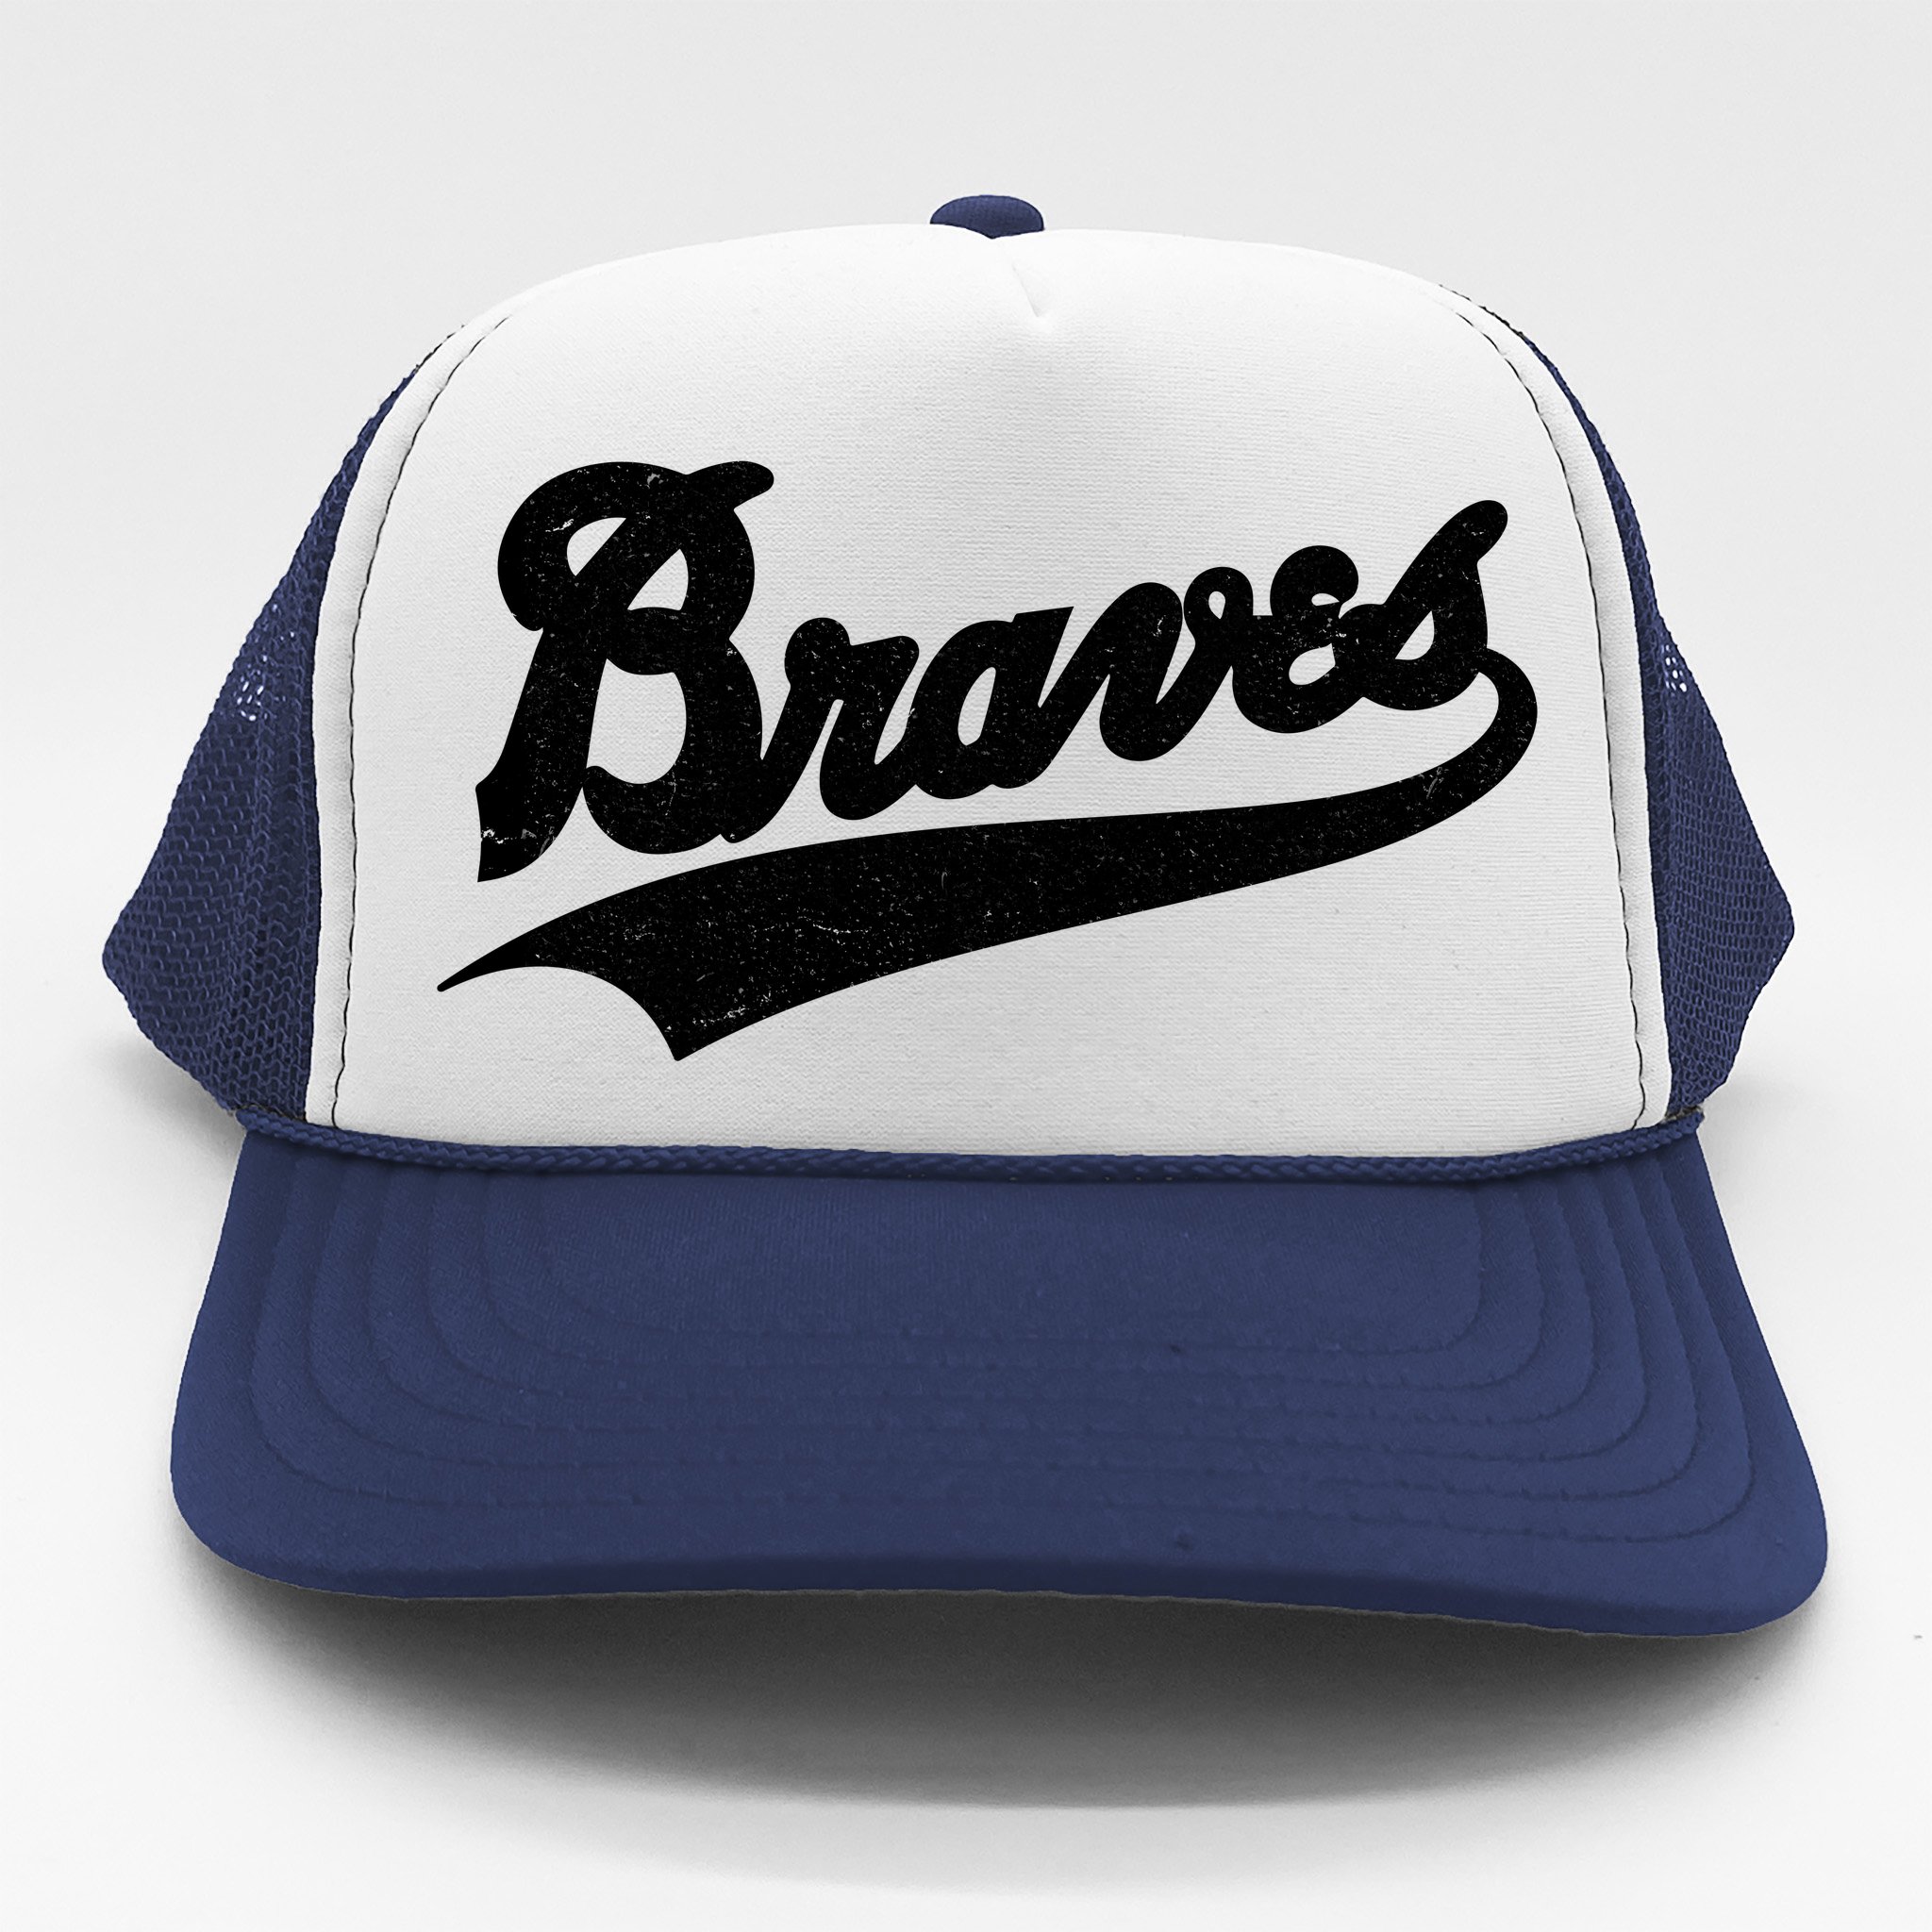 braves hat vintage